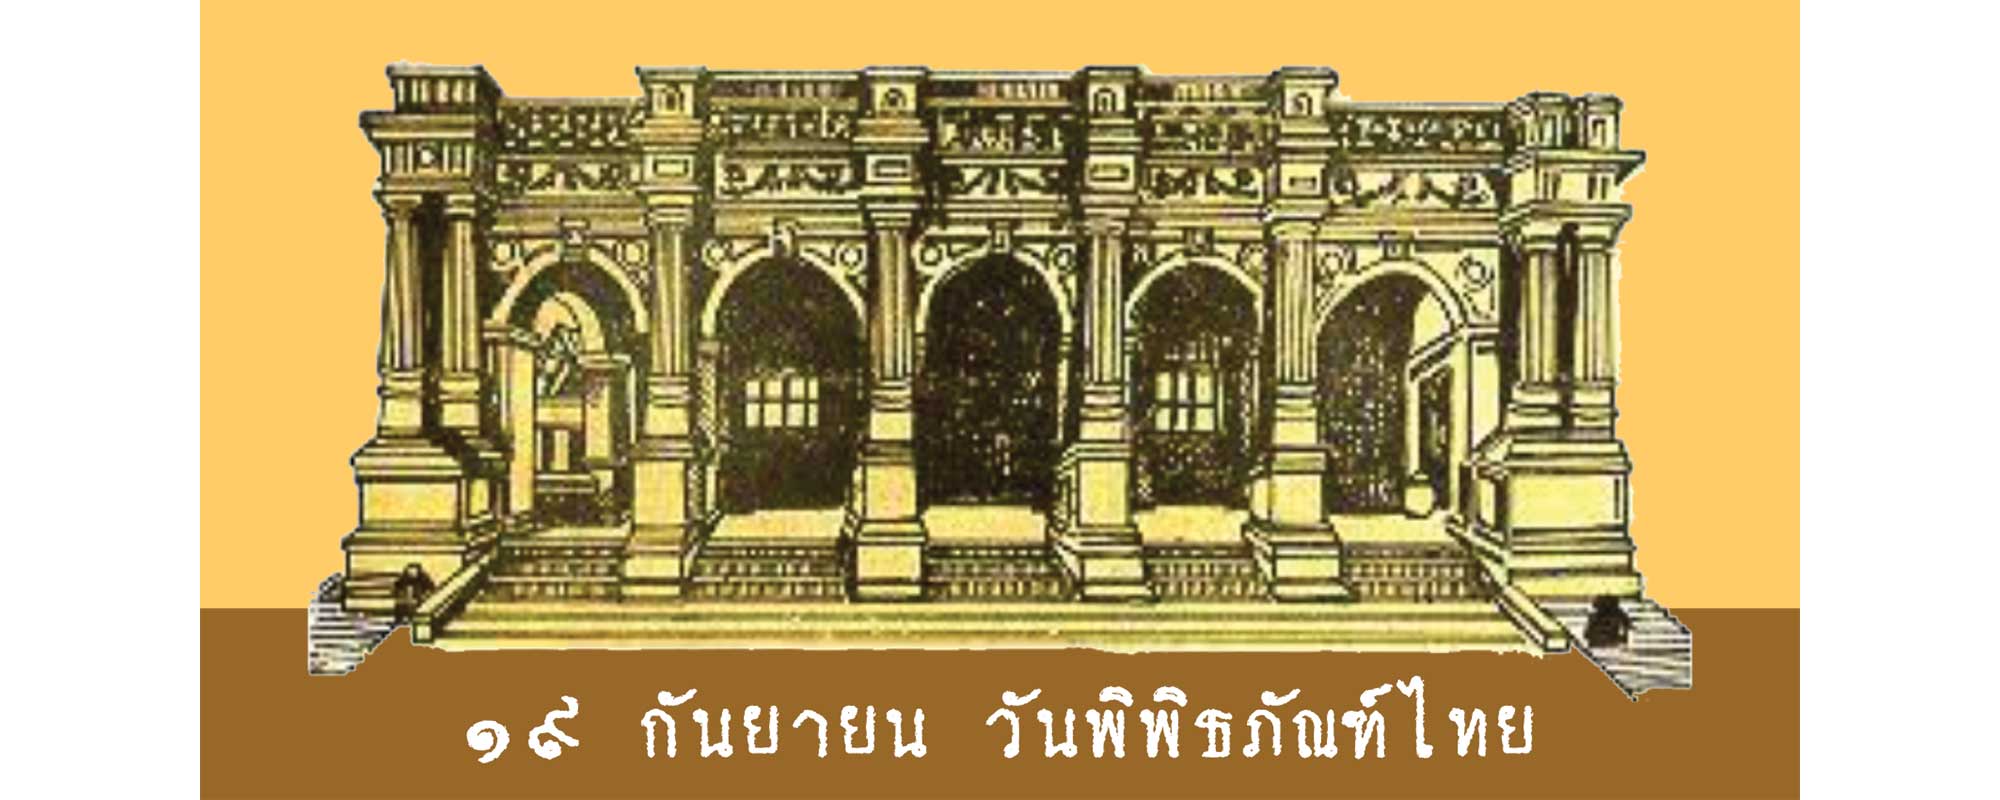 thai museum day01